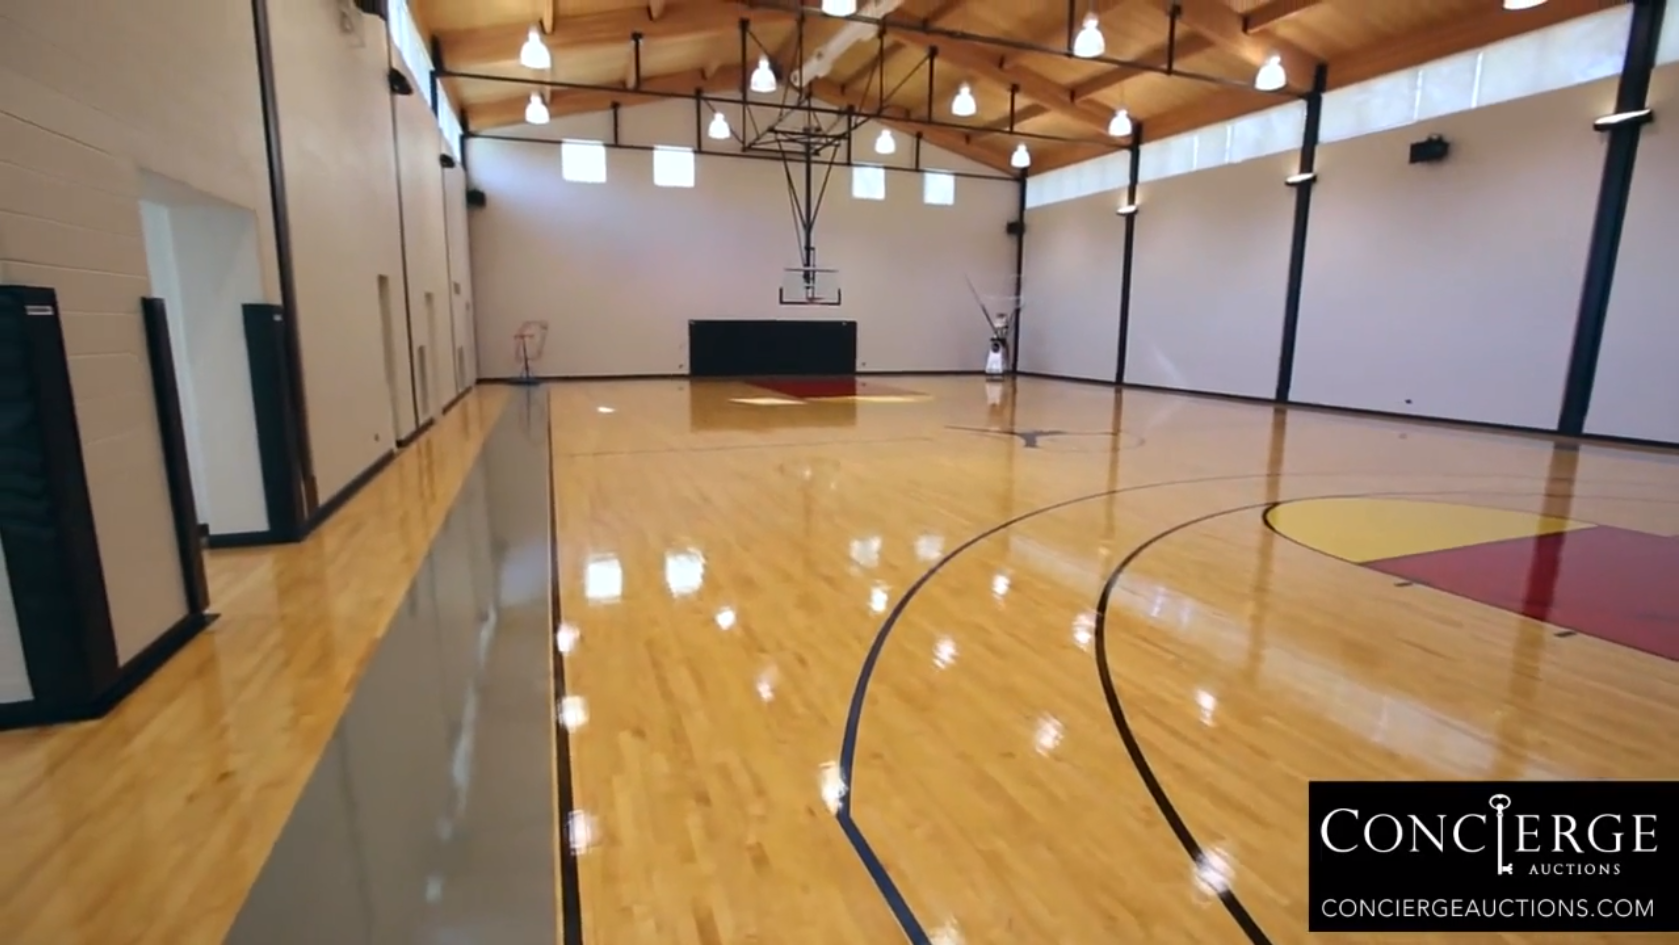 En helt egen baskethall.